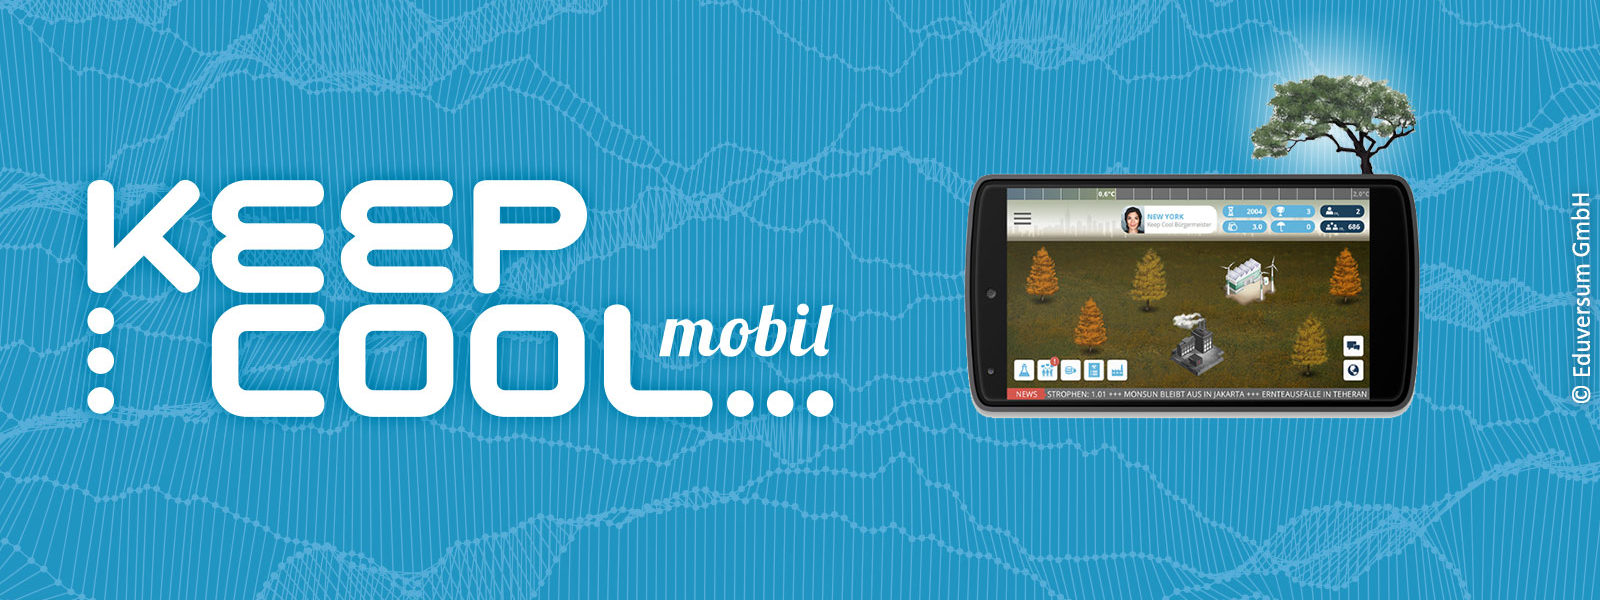 Die Spiele-App Keep Cool mobil auf einem Smartphone